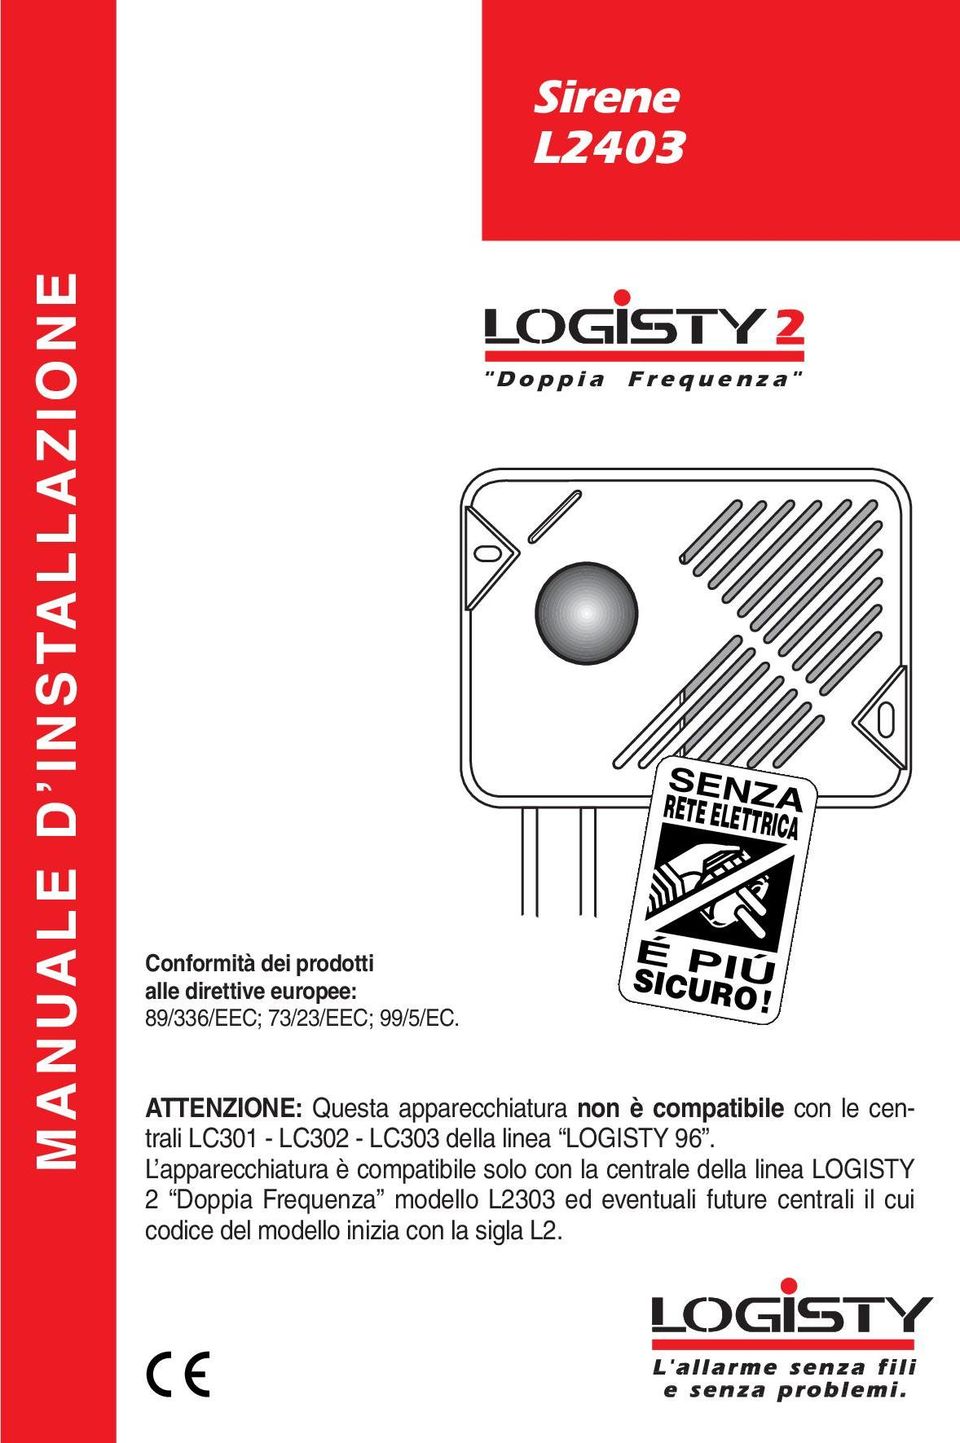 ATTENZIONE: Questa apparecchiatura non è compatibile con le centrali LC30 - LC30 - LC303 della linea LOGISTY 96.